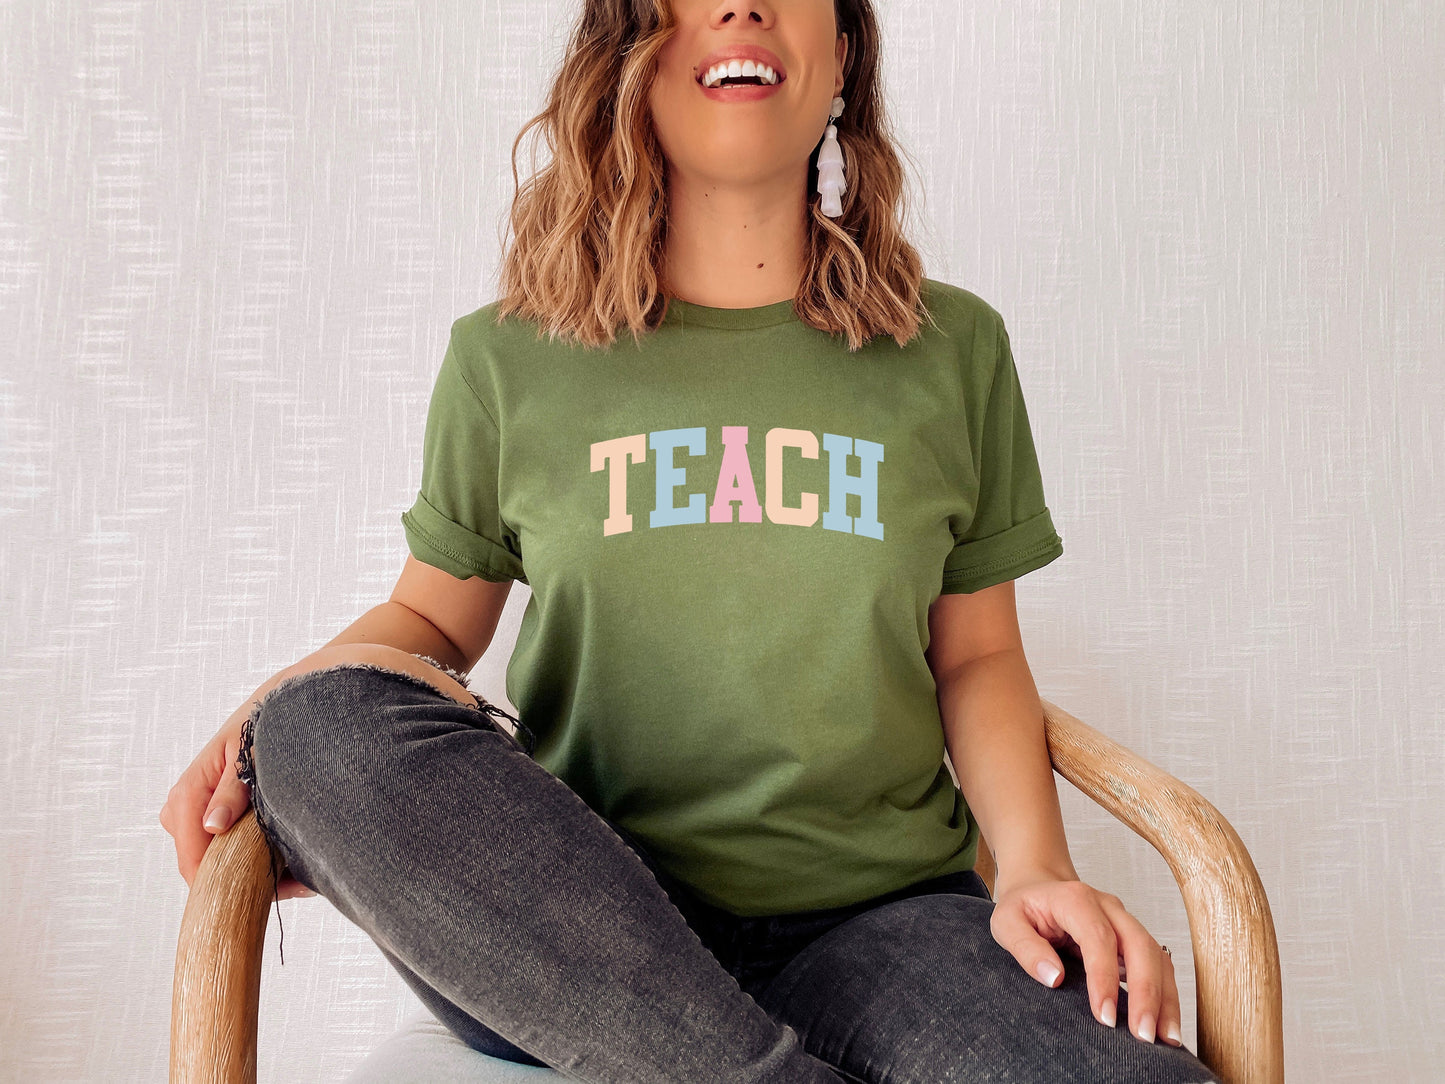 Teach - Teachers Shirts - Teacher Gift